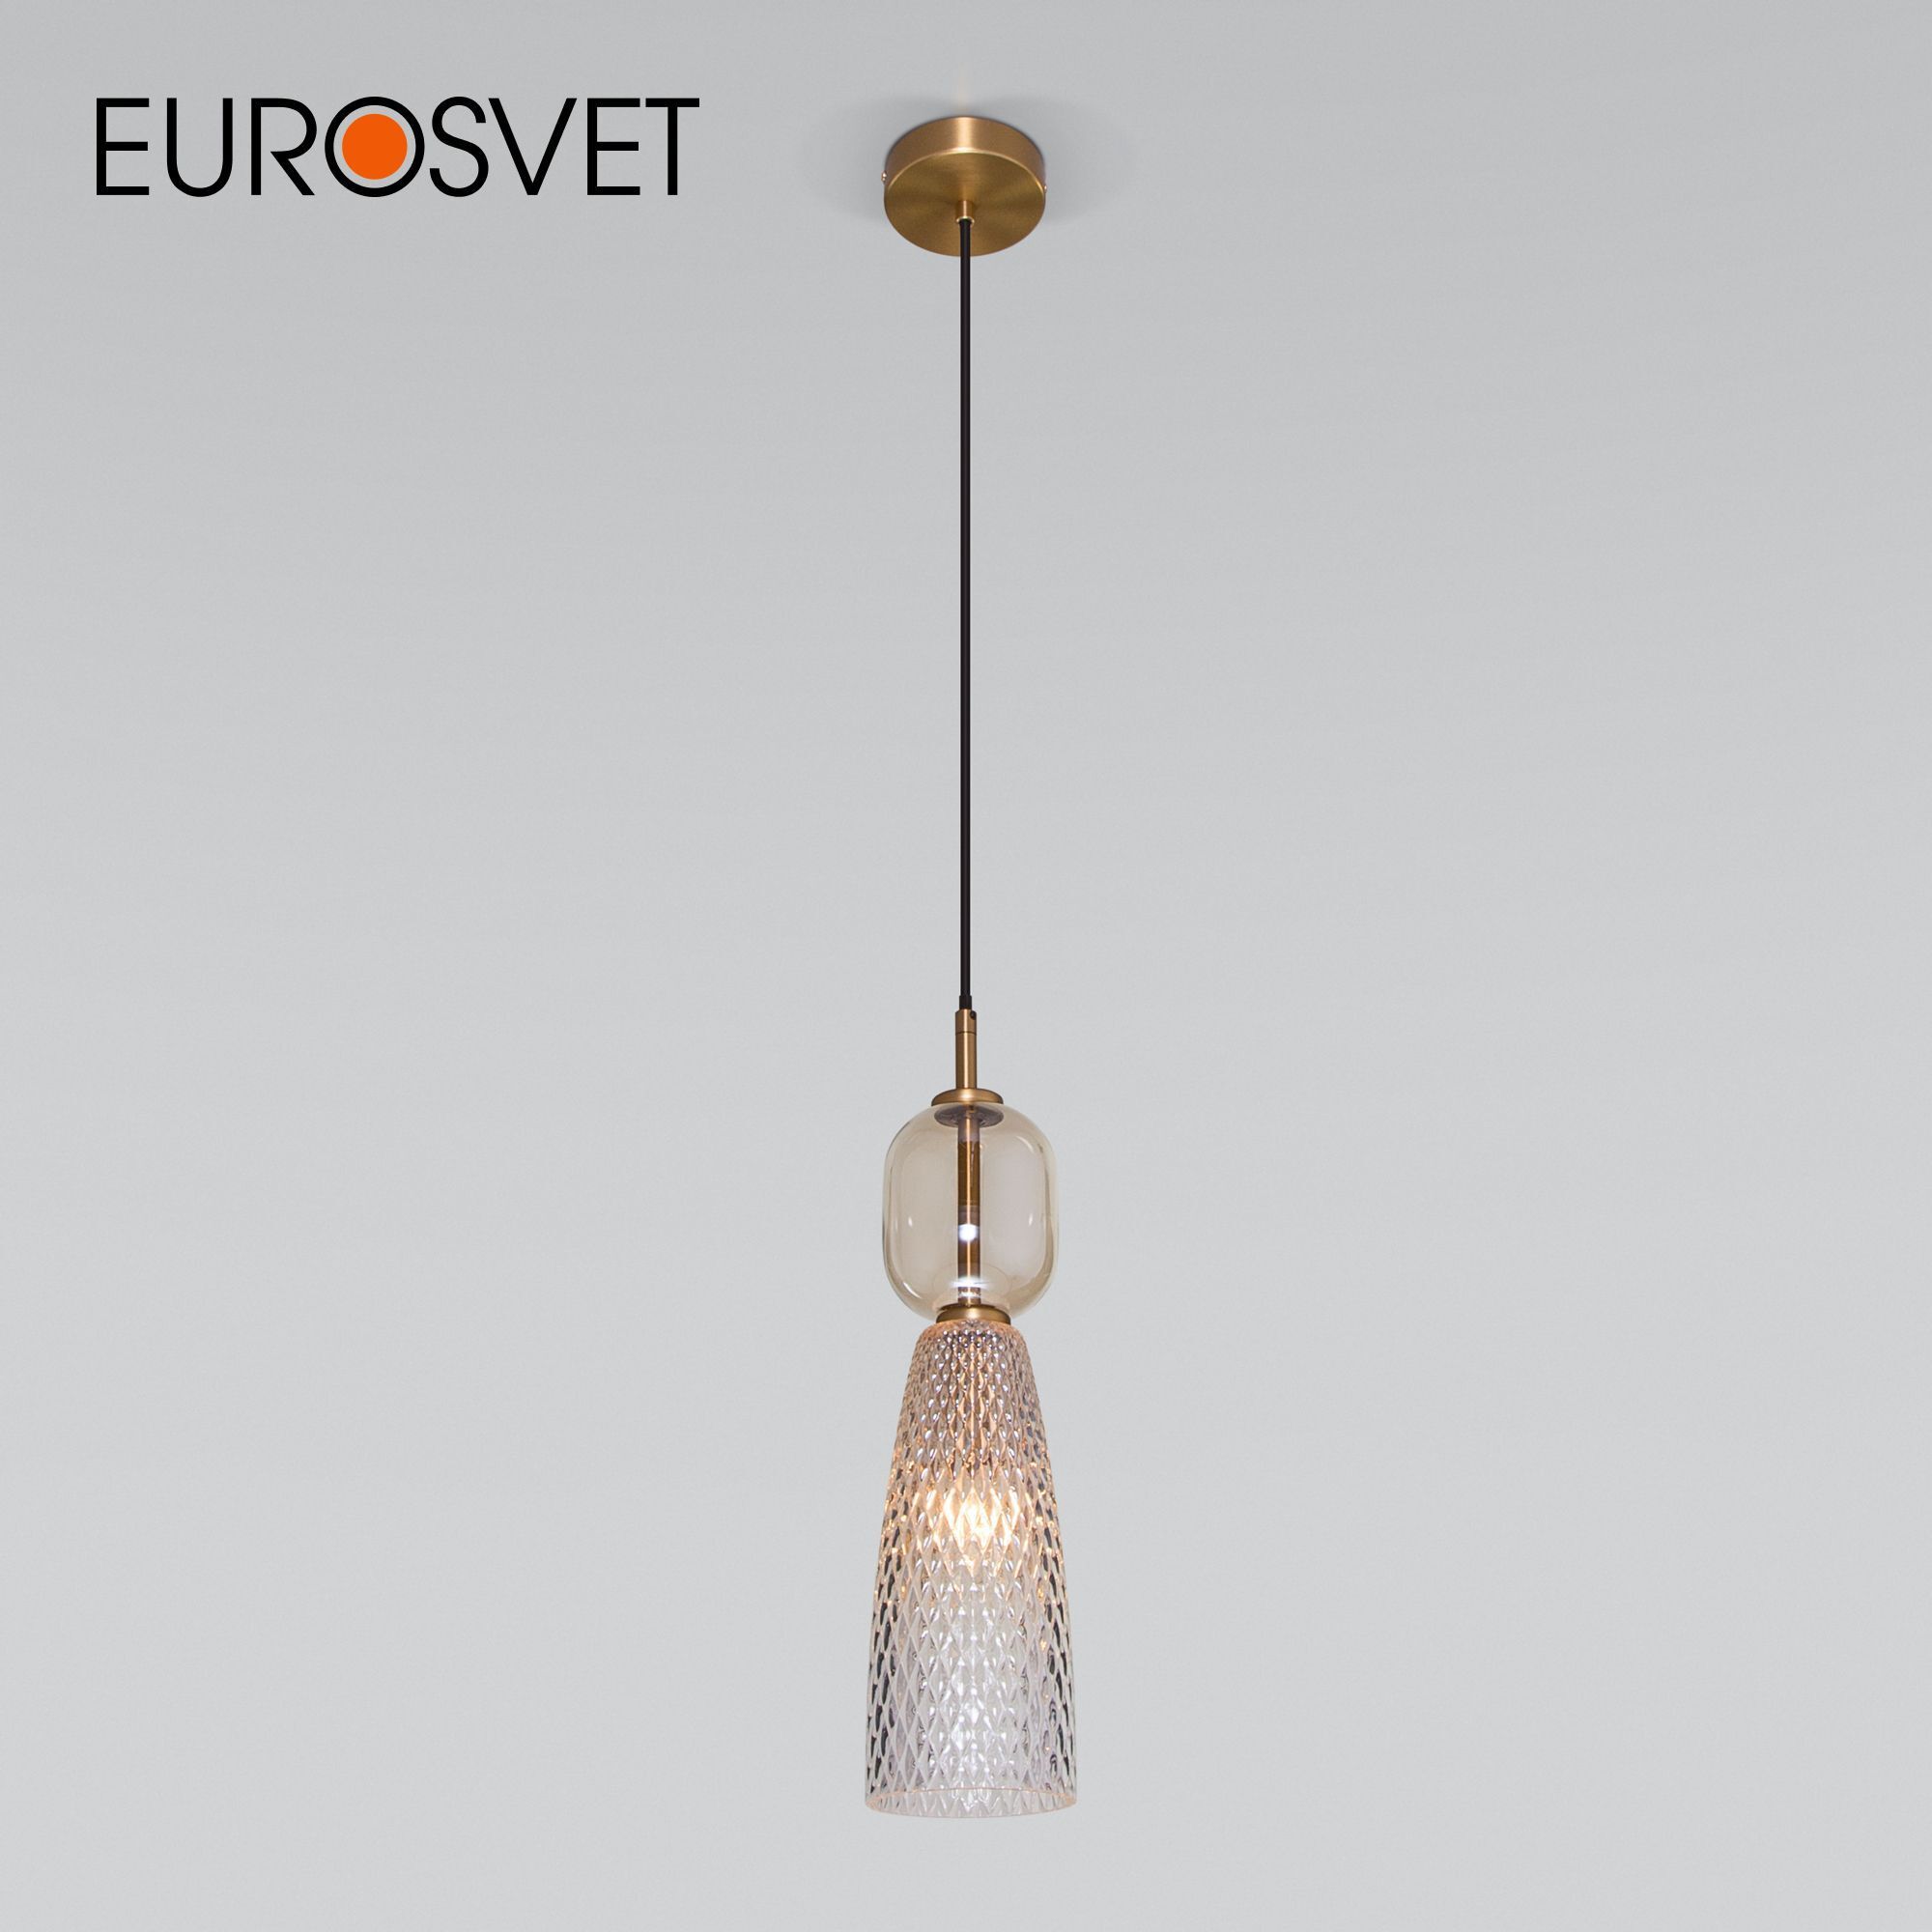  светильник с плафоном EUROSVET 50211/1 янтарный  .